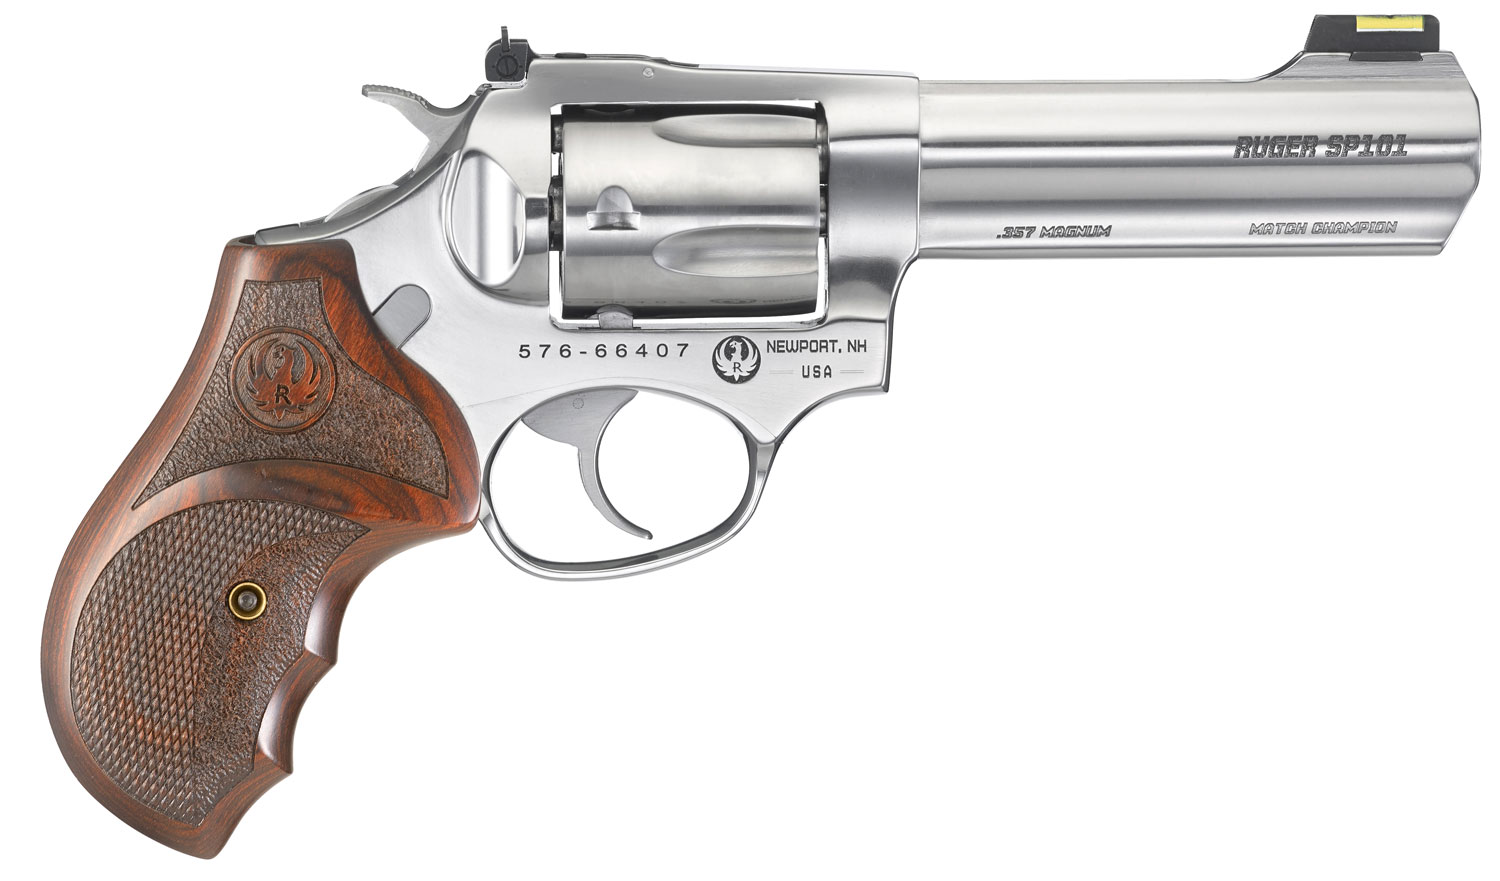 Ruger SP101 Match Champion 357 Magnum Revolver 4.2" Barrel Hardwood Grips